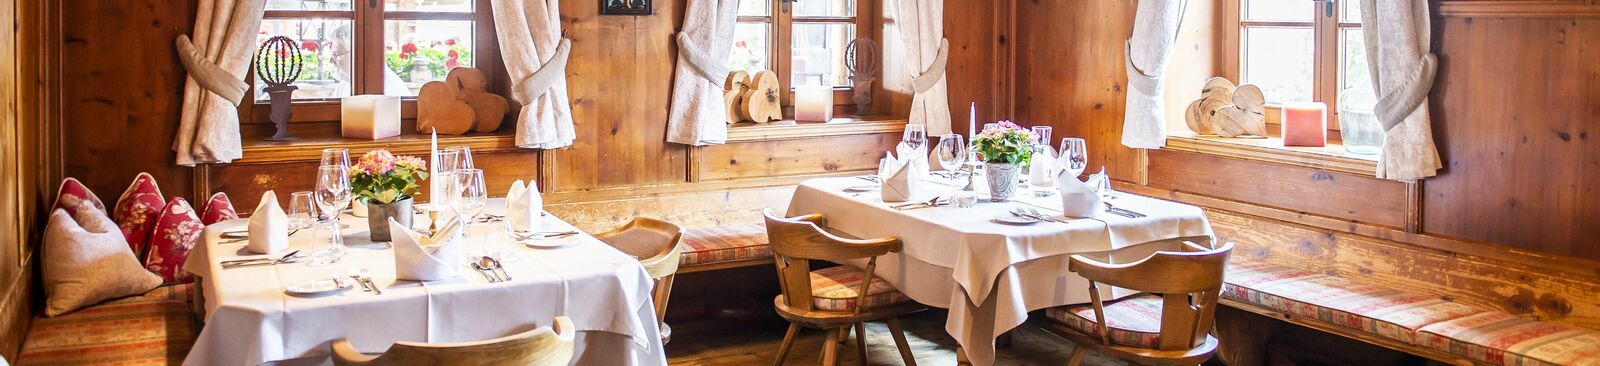 Gastlichkeit und die hervorragende Küche zeichnen das Hotel zur Post in Alpbach in Tirol aus.